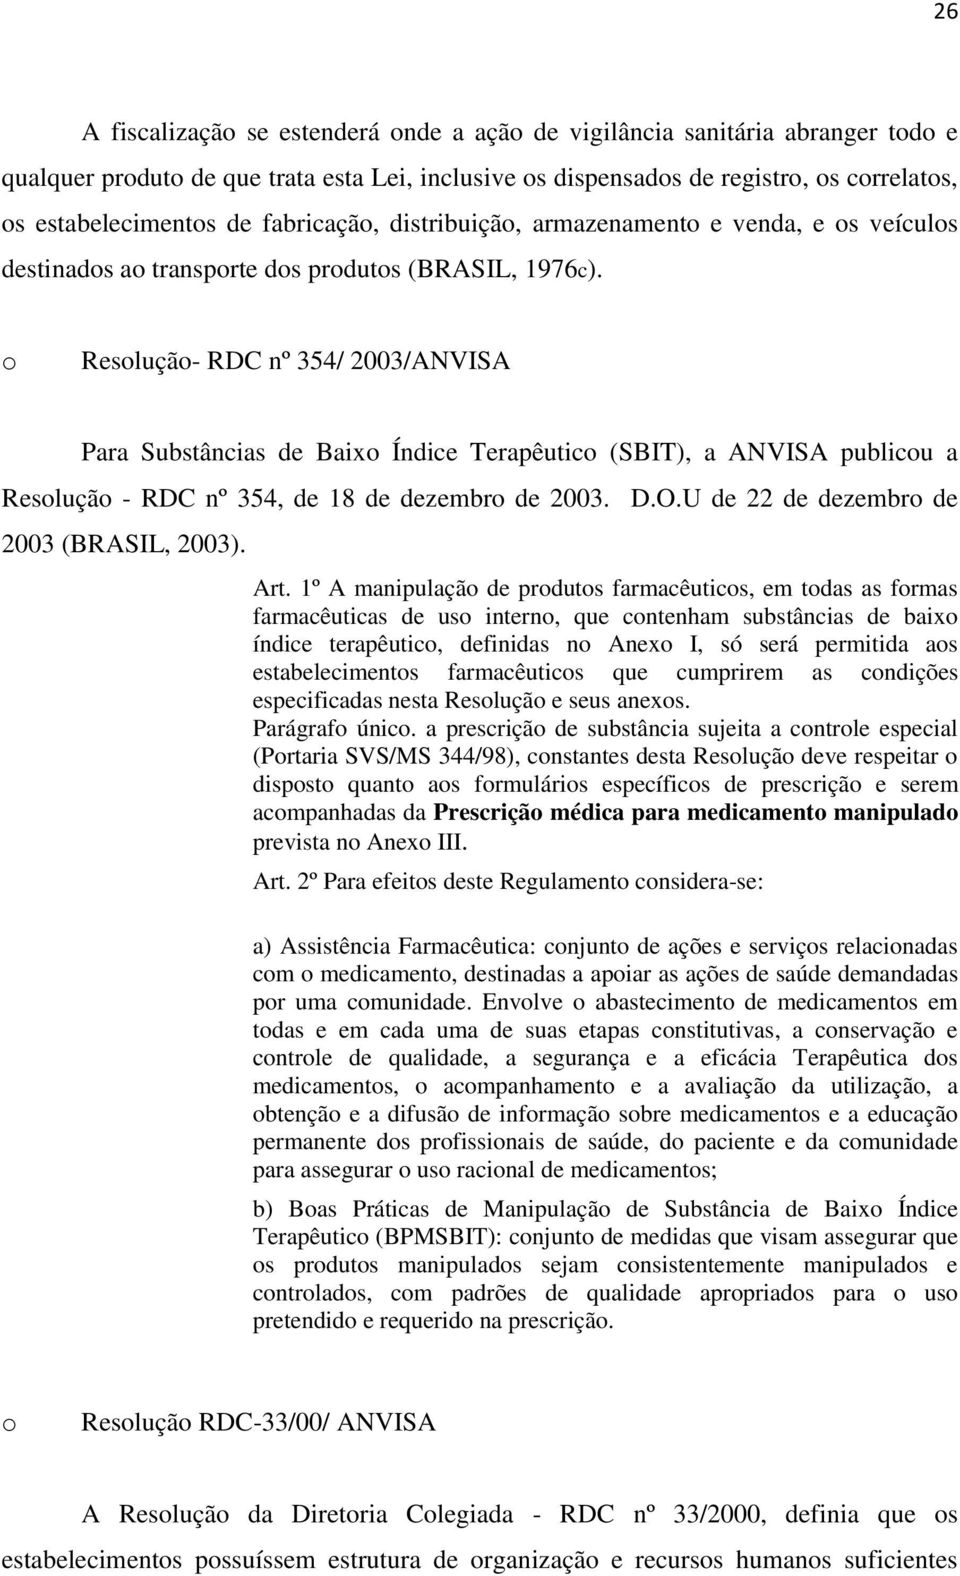 o Resolução- RDC nº 354/ 2003/ANVISA Para Substâncias de Baixo Índice Terapêutico (SBIT), a ANVISA publicou a Resolução - RDC nº 354, de 18 de dezembro de 2003. D.O.